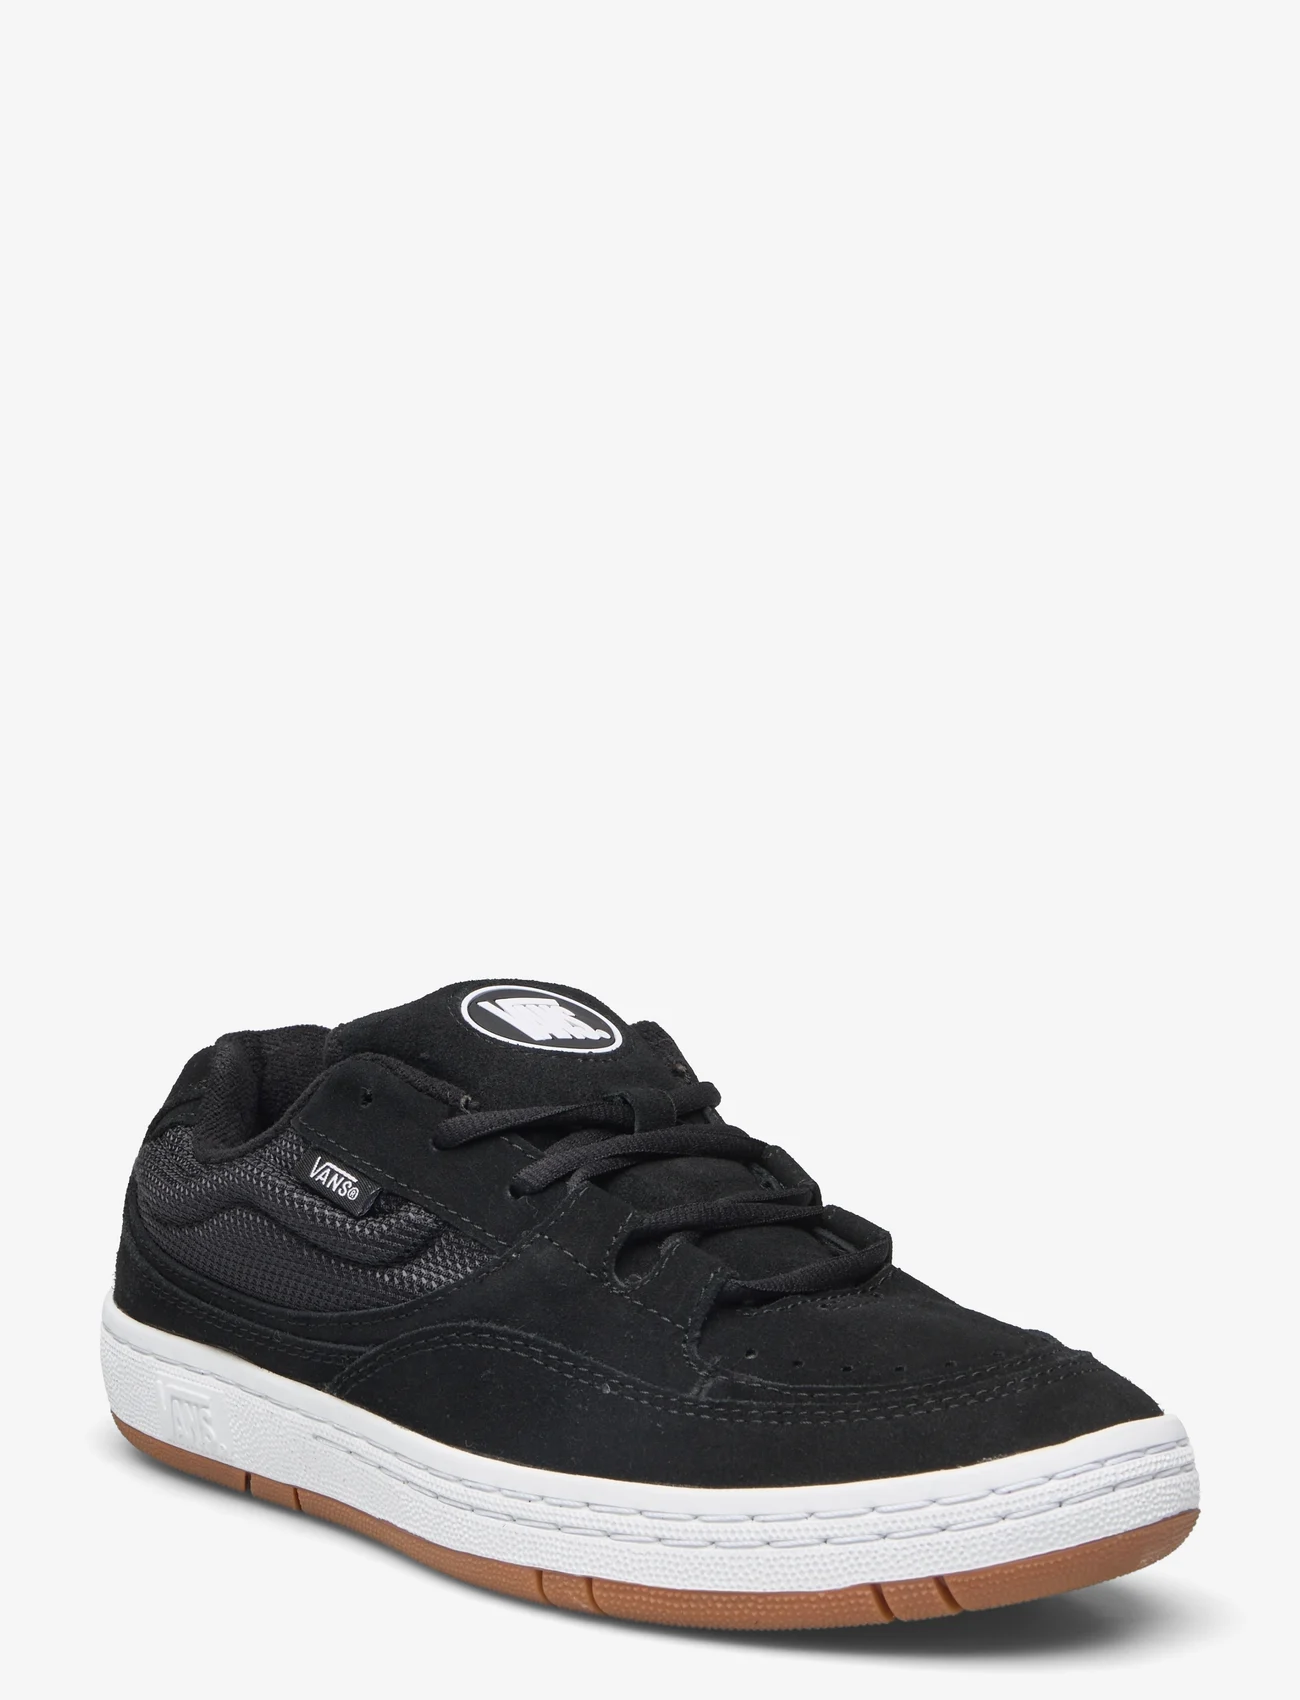 VANS - Speed LS - niedrige sneakers - black/true white - 0